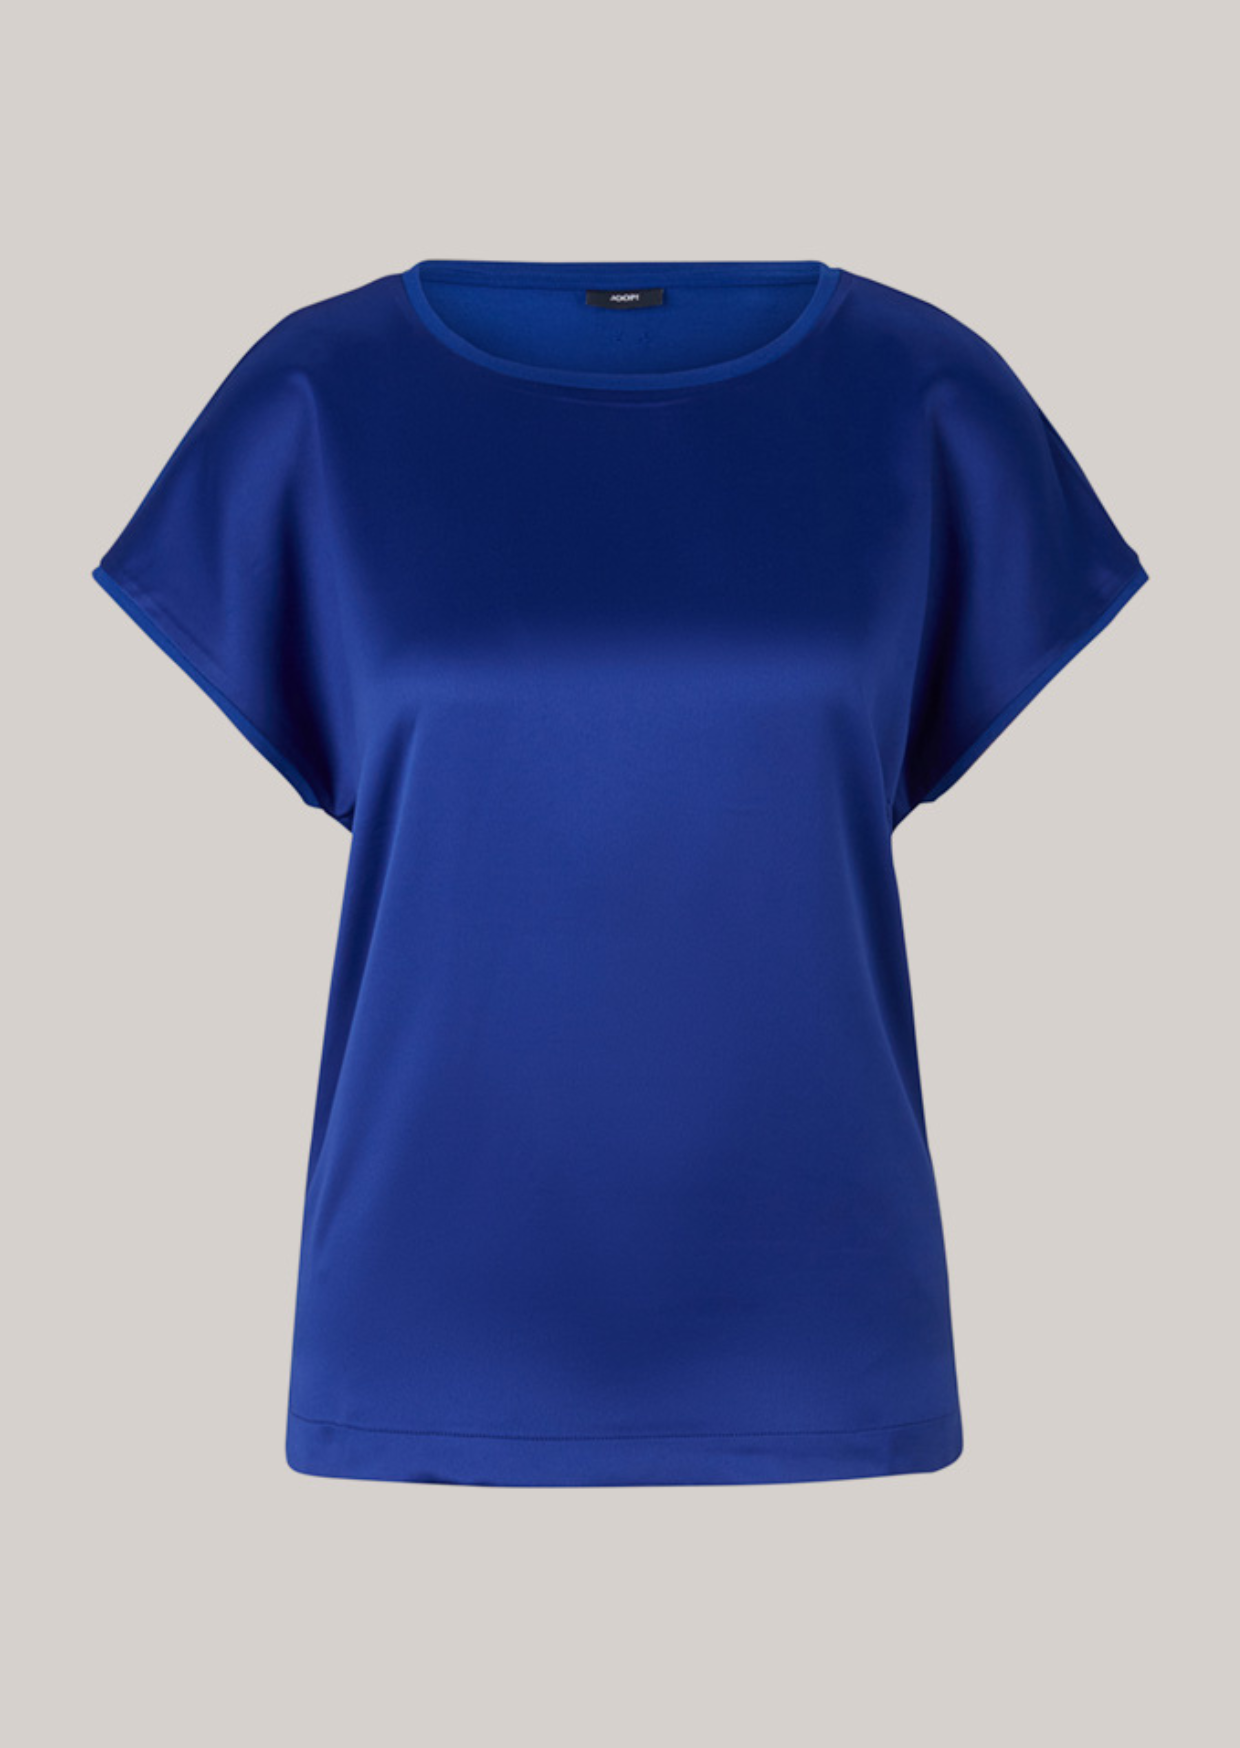 joop T-shirt blue 